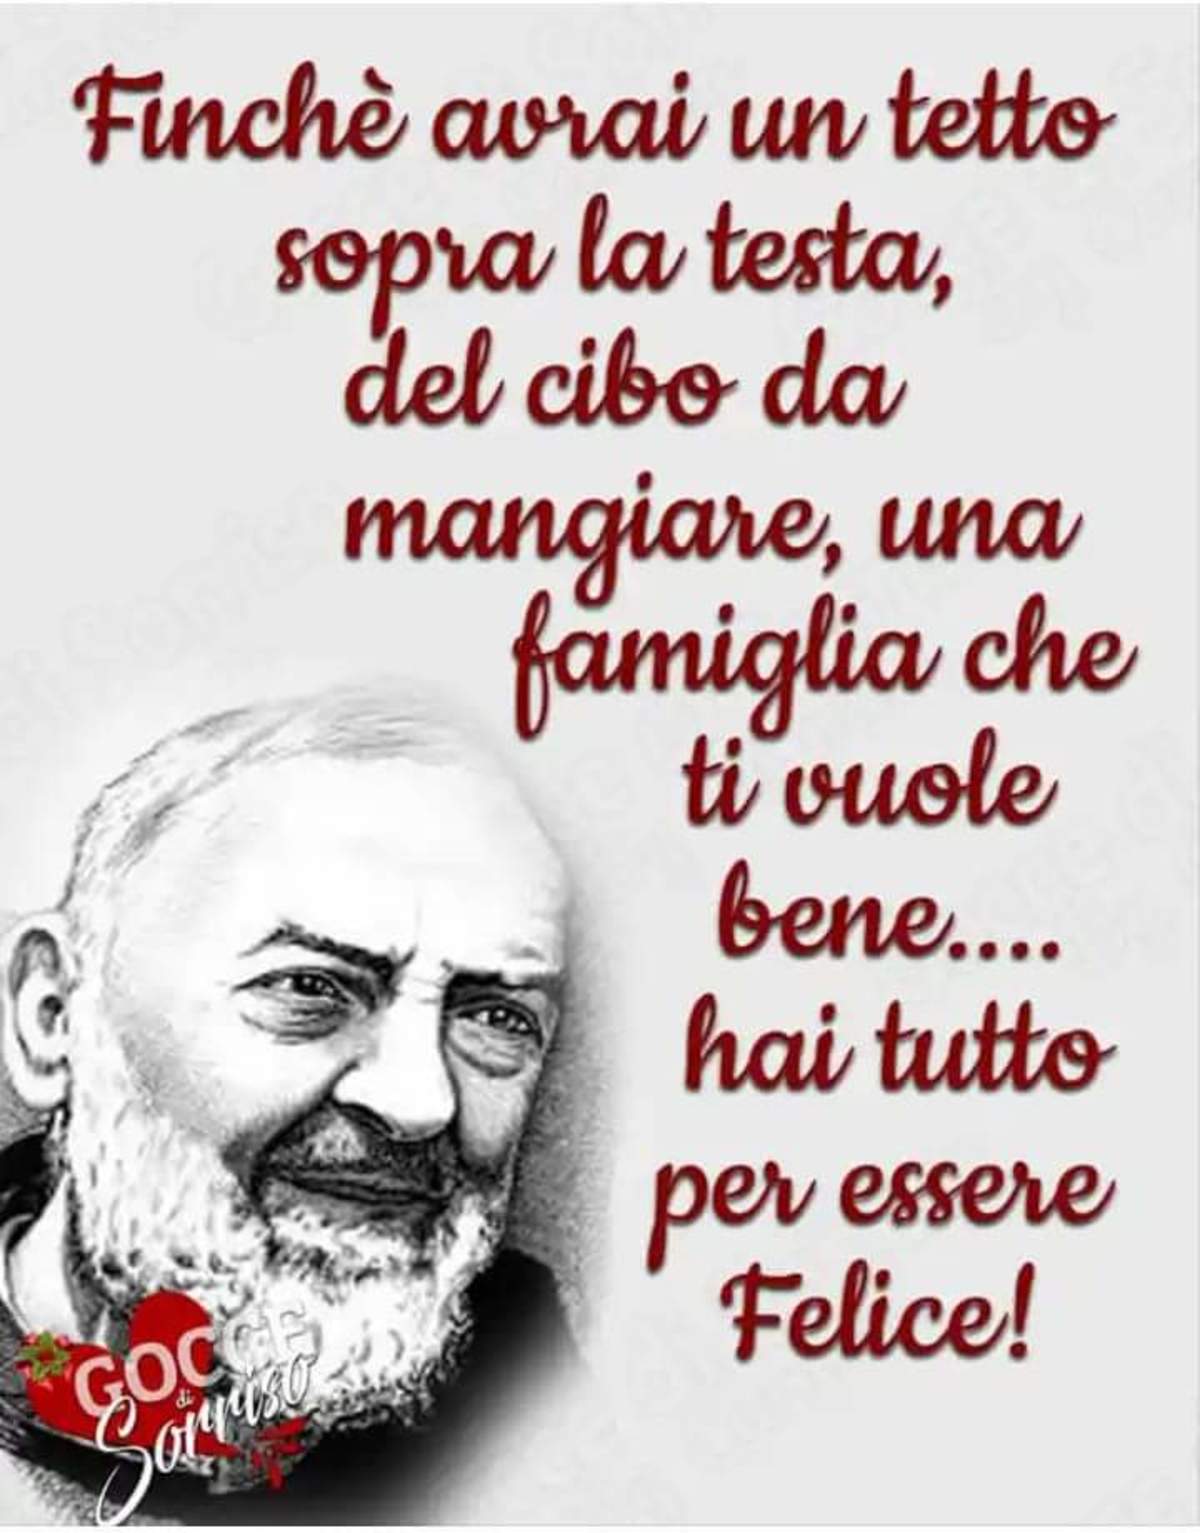 Immagini belle di Padre Pio 9620